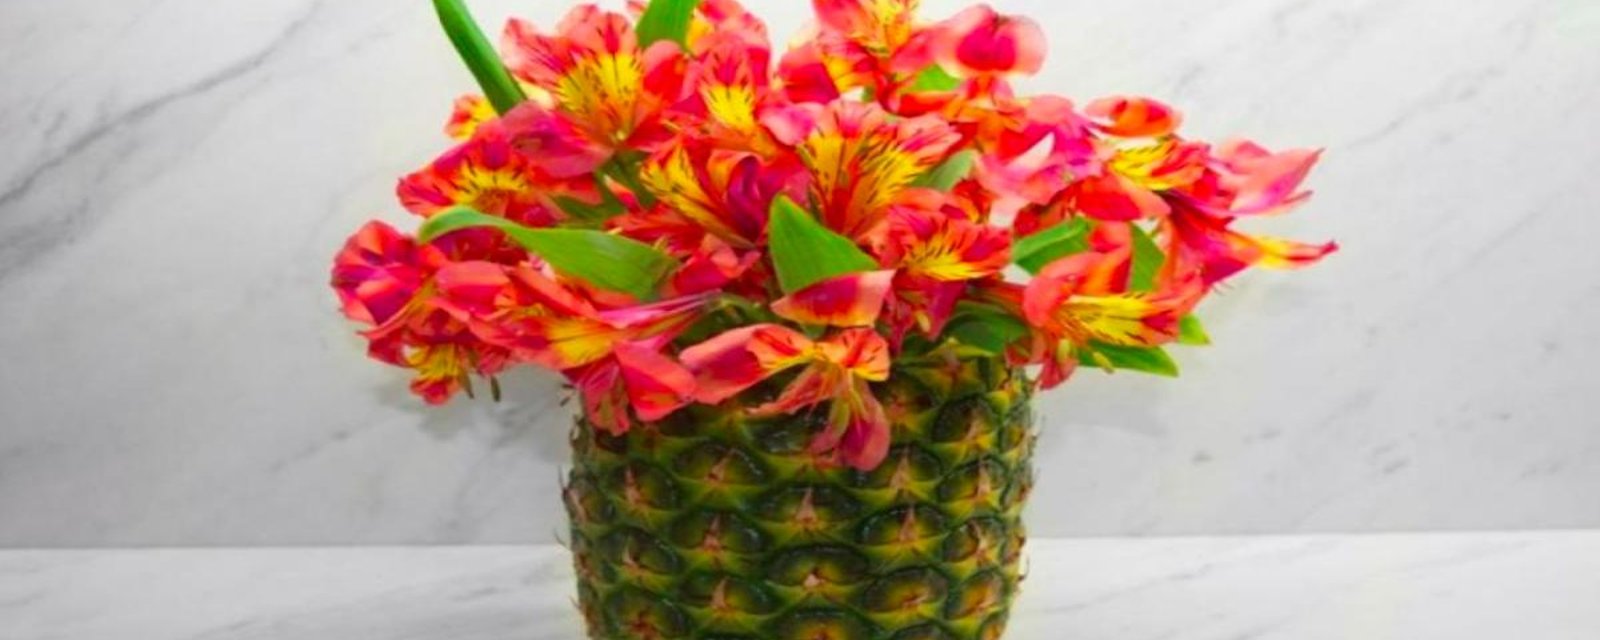 Apprenez à faire cet arrangement floral à partir d'un ananas en seulement quelques étapes